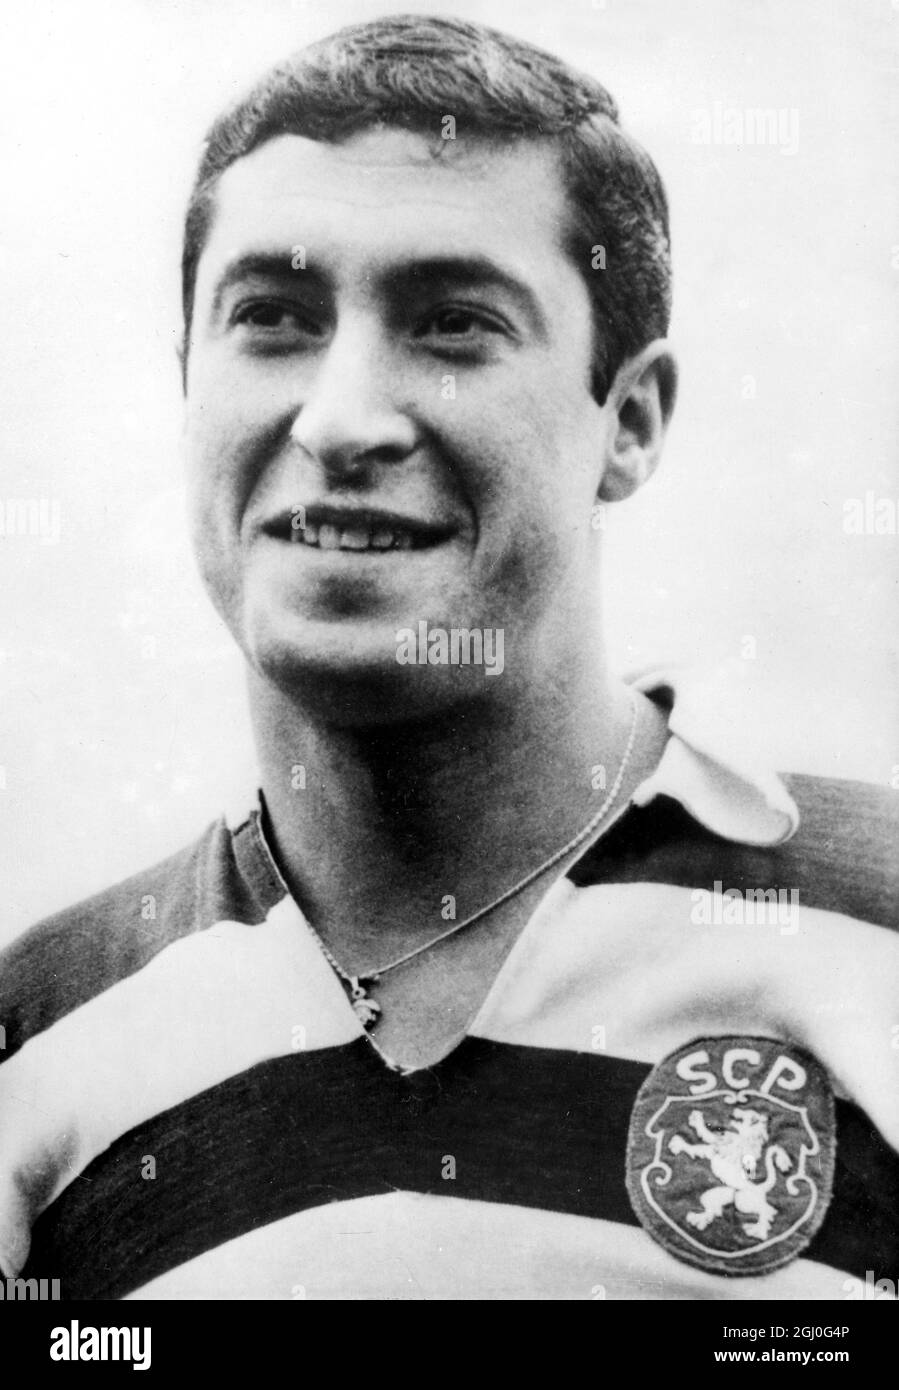 Fernando Mendes, la metà posteriore internazionale del Portogallo, che giocherà per lo Sporting Lisbon contro Manchester United nella European Cup Winners Cup. 29 gennaio 1964 Foto Stock